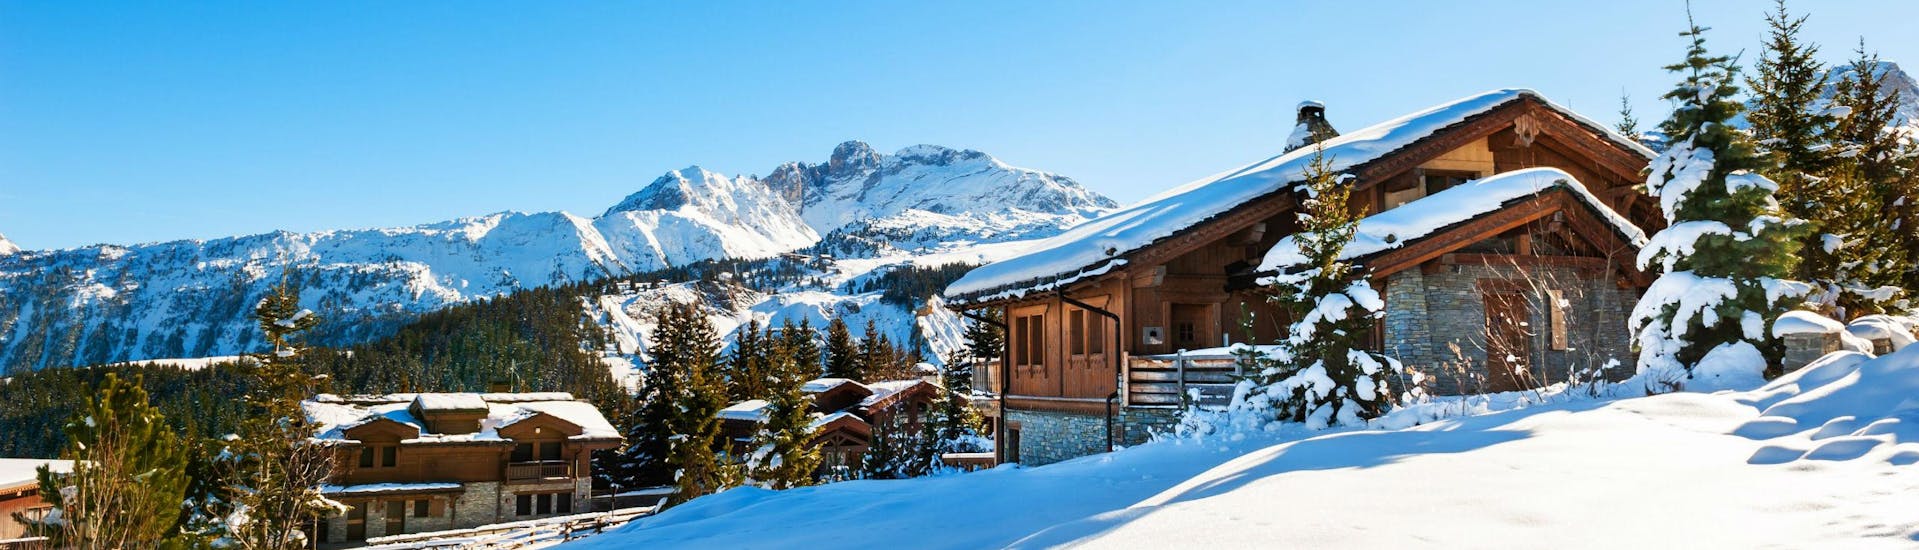 Une photo de plusieurs refuges de montagne enneigés dans la populaire station de ski française de Courchevel, où les visiteurs peuvent apprendre à skier durant l'un des nombreux cours de ski organisés par les écoles de ski locales.